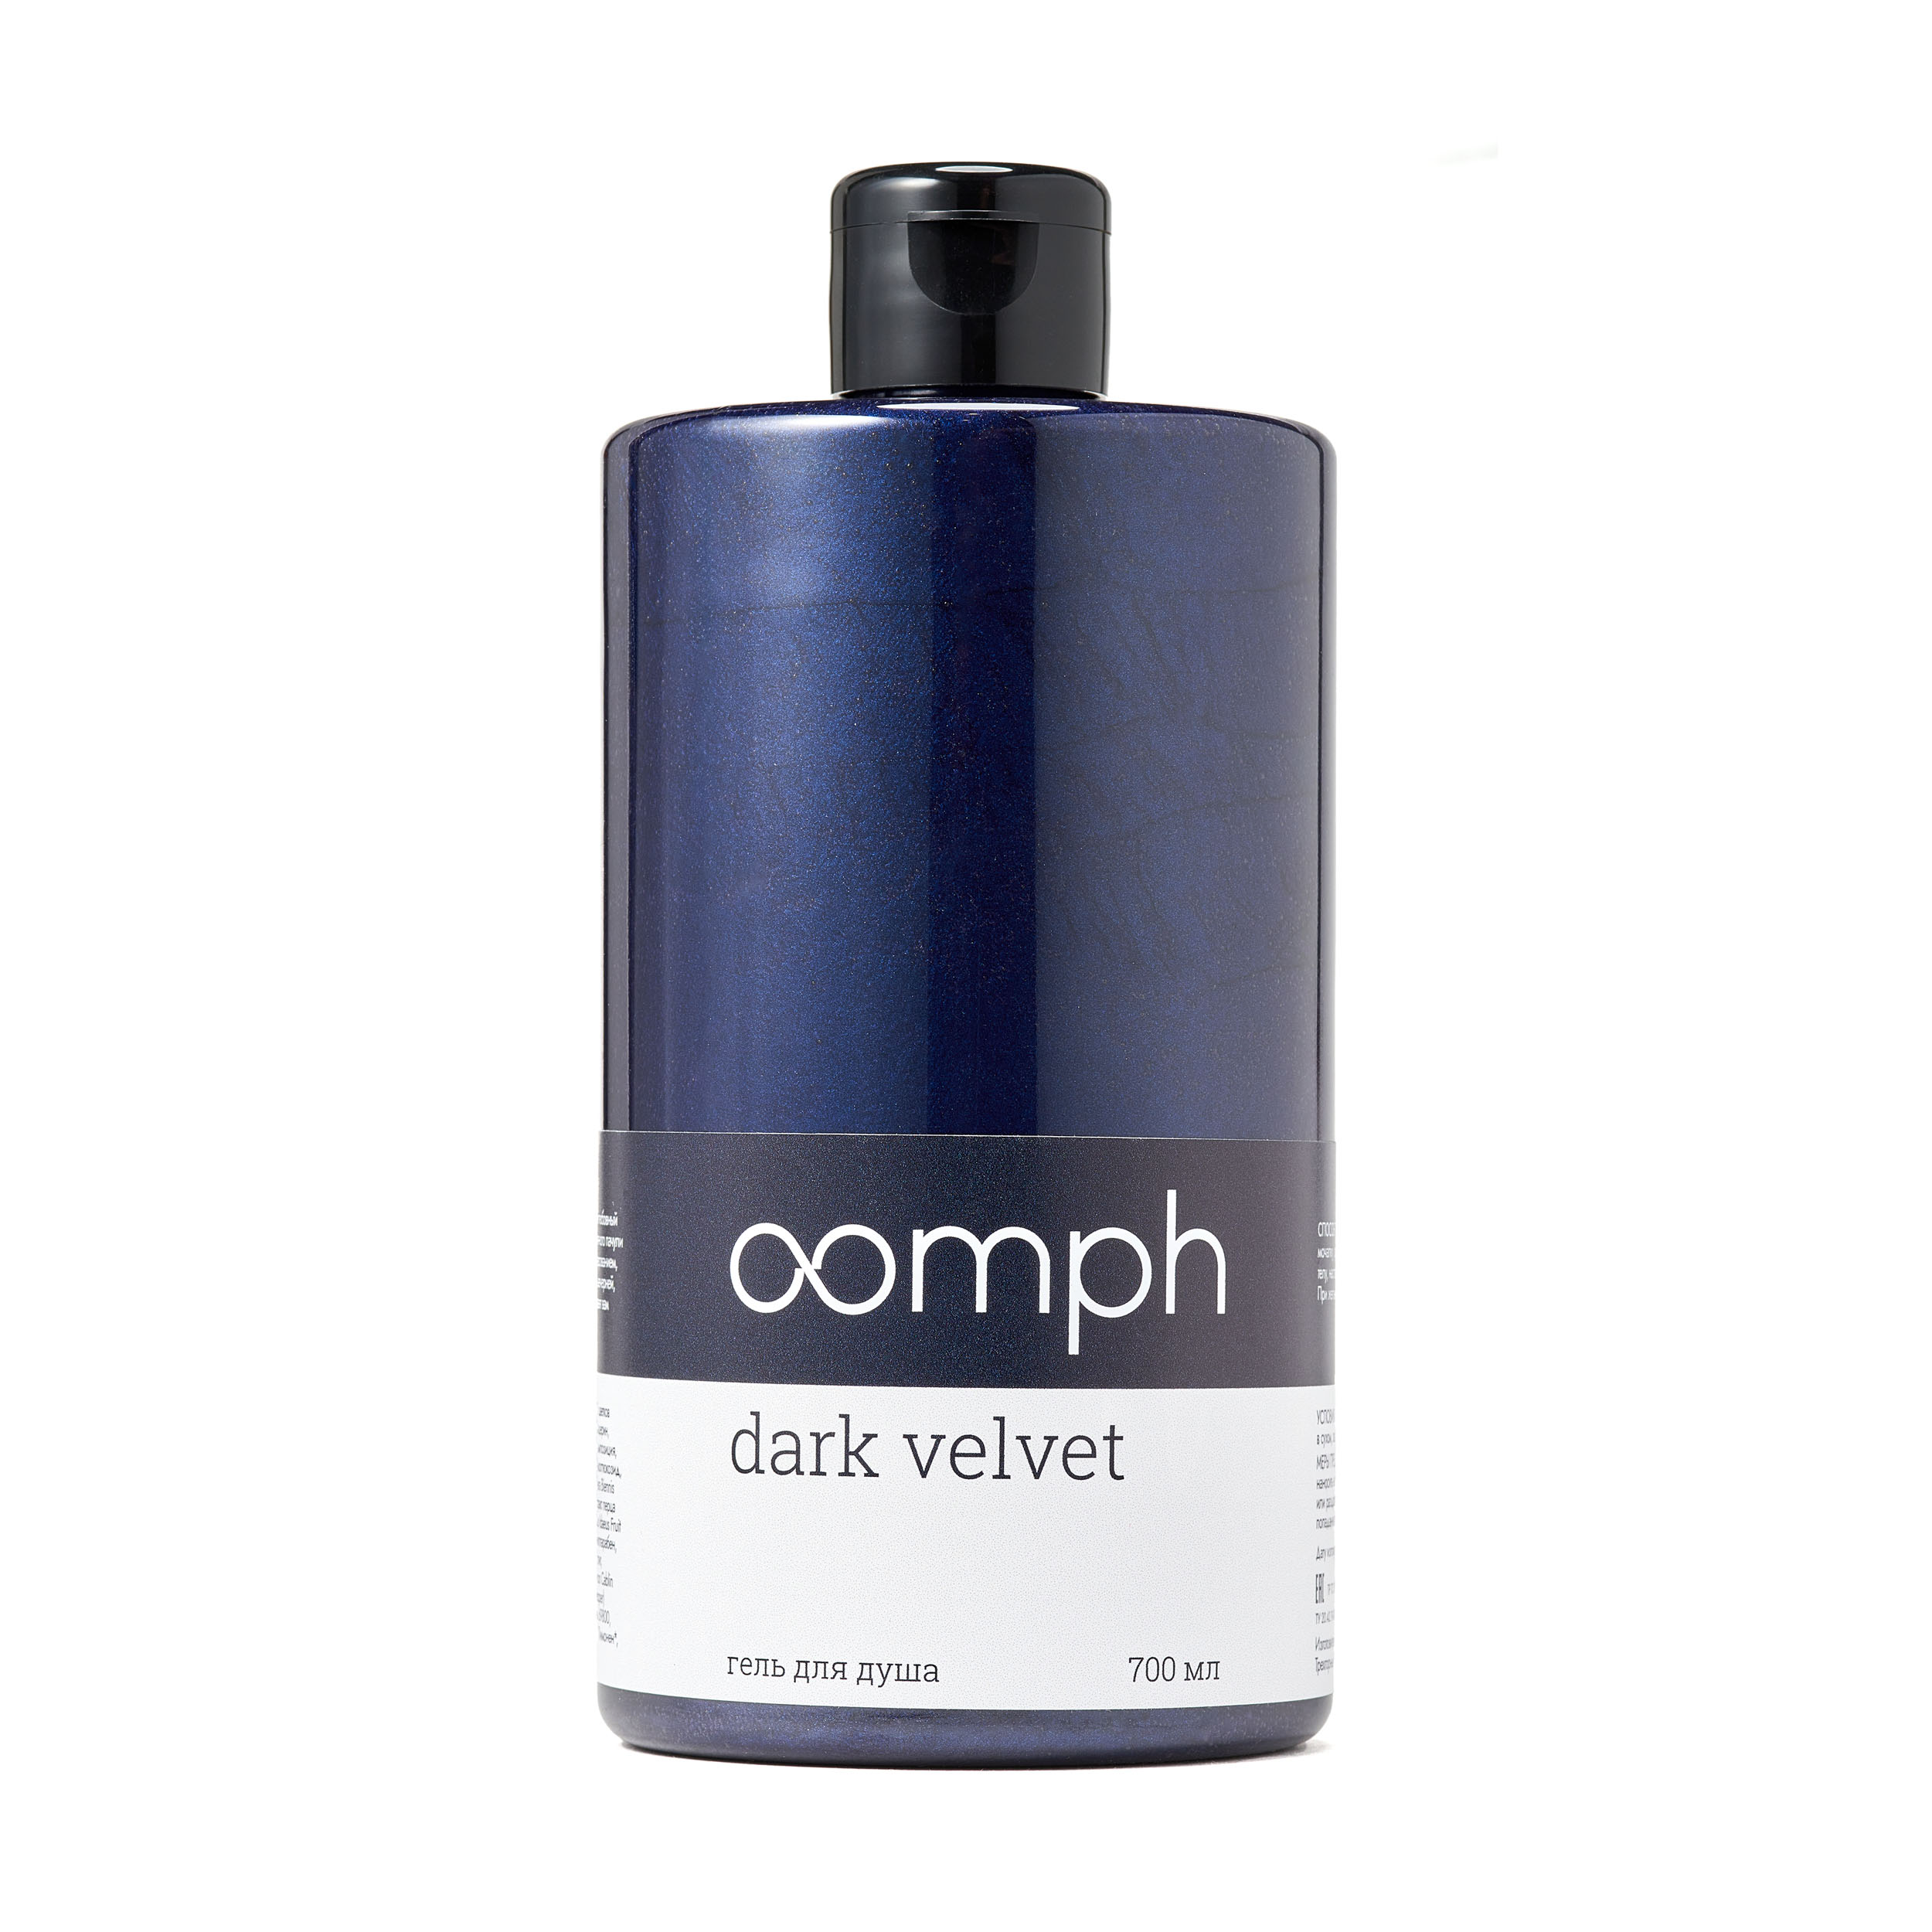 Гель для душа OOMPH Dark velvet 700мл любовный эксперимент по американски